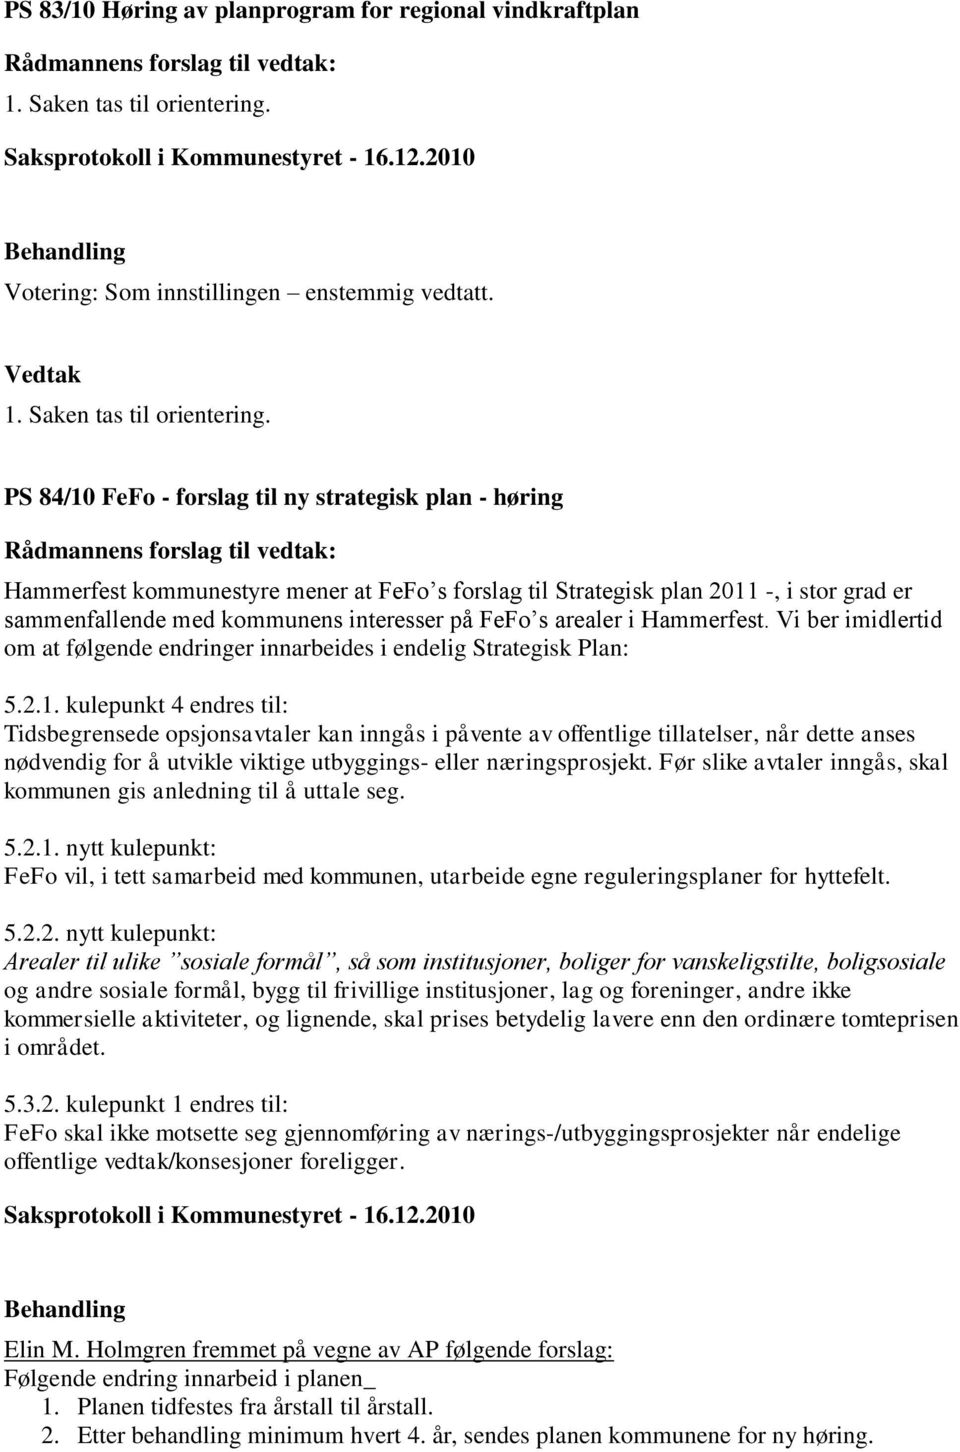 PS 84/10 FeFo - forslag til ny strategisk plan - høring Hammerfest kommunestyre mener at FeFo s forslag til Strategisk plan 2011 -, i stor grad er sammenfallende med kommunens interesser på FeFo s